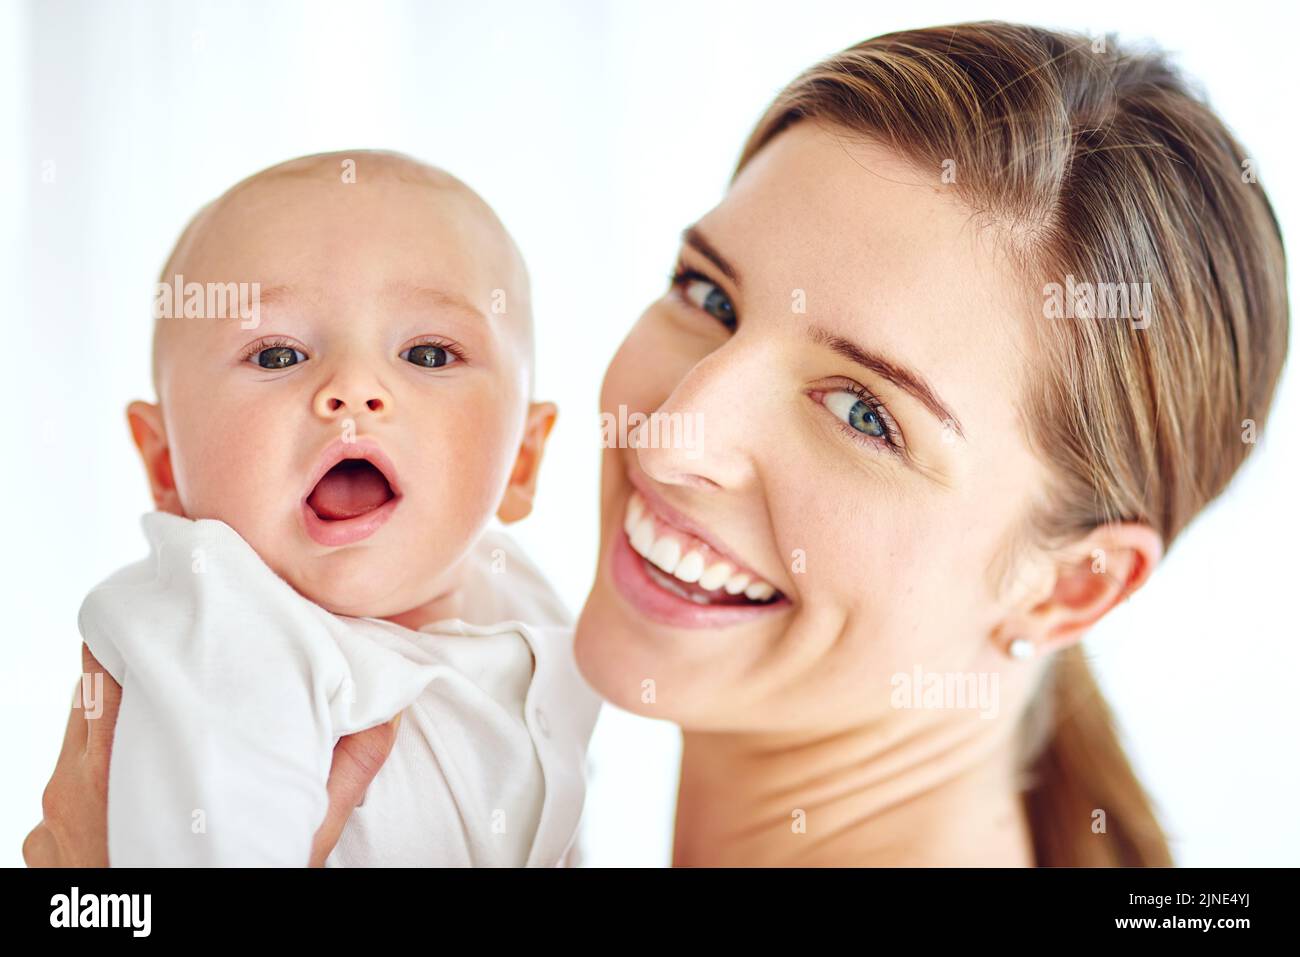 Mignon, adorable bébé liant avec la mère appréciant un temps de jeu de qualité ensemble à la maison. Fière, affectueuse et heureuse femme tenant son petit nouveau-né Banque D'Images